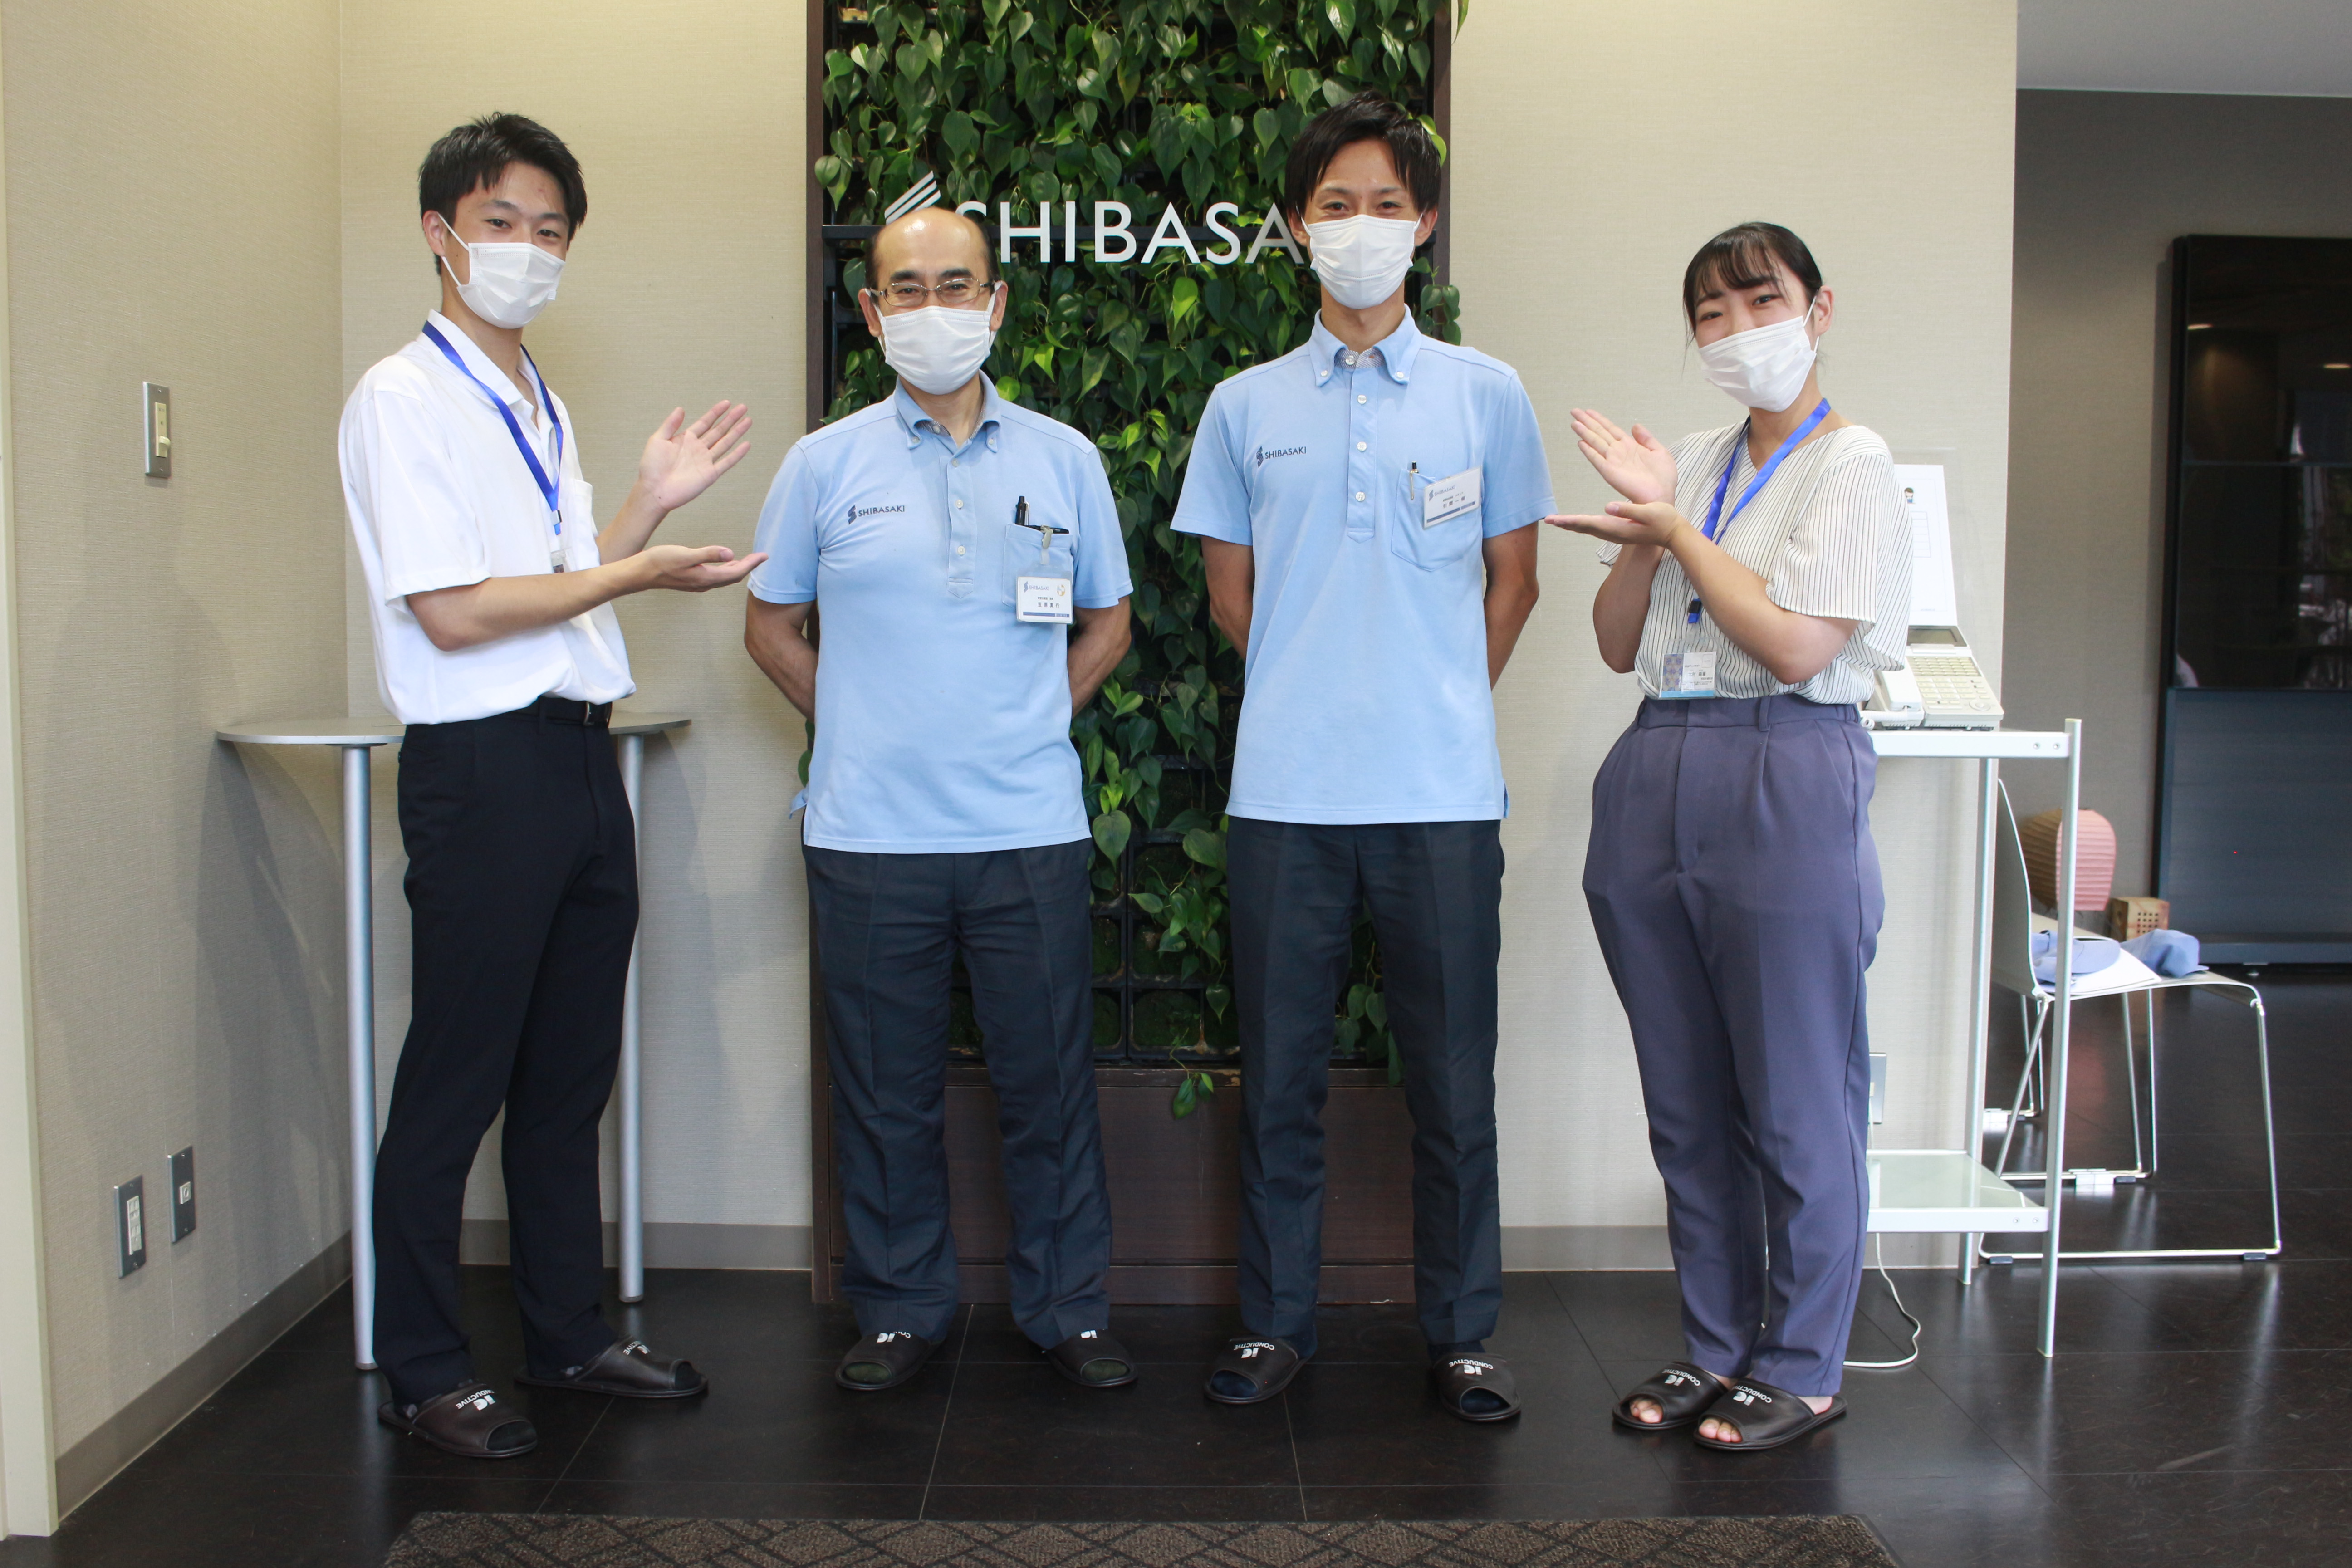 西武文理大学サービス経営学部の学生が任命された埼玉県の企業版「ちちぶアンバサダー」による企業紹介が始まりました。